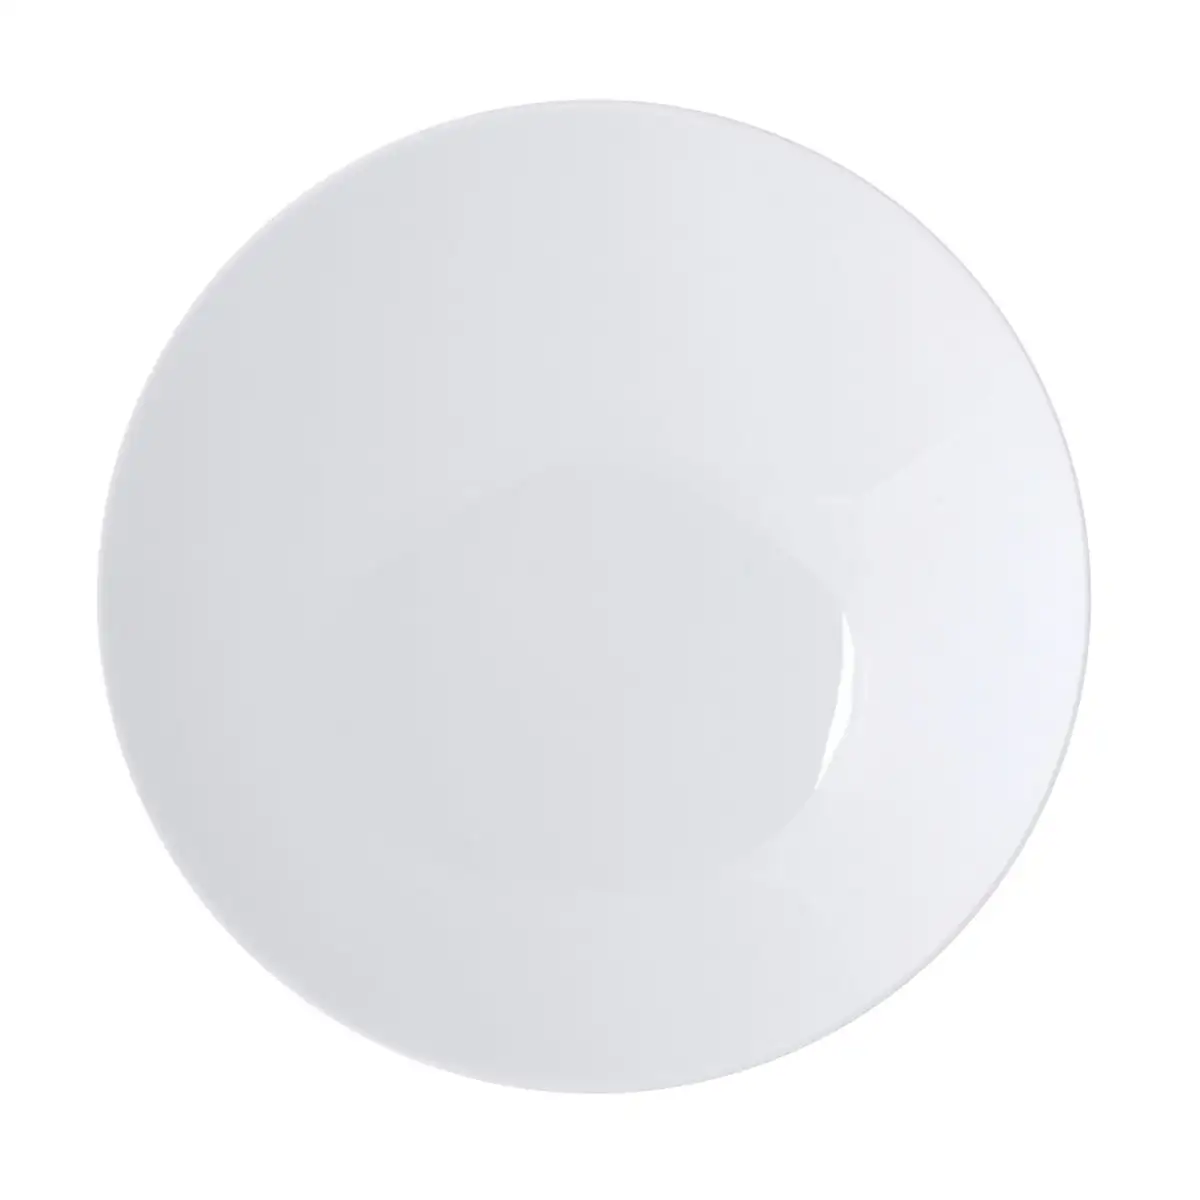 Assiette creuse ariane coupe ceramique blanc 20 cm pack 6x _1605. DIAYTAR SENEGAL - Là où Chaque Achat a du Sens. Explorez notre gamme et choisissez des produits qui racontent une histoire, votre histoire.